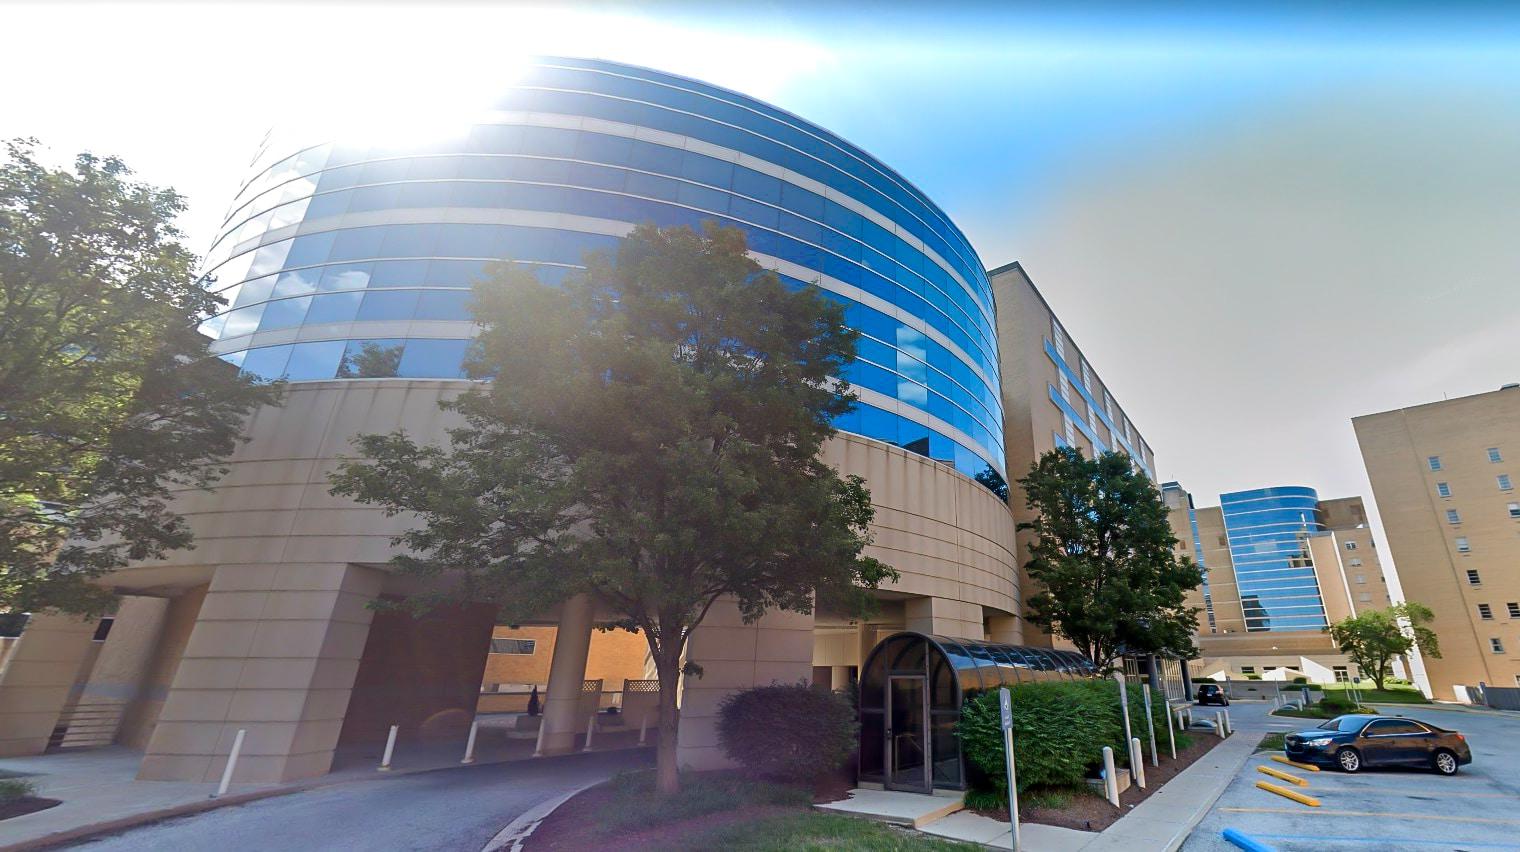 乐虎游戏被雇佣来承担175号大楼的租赁和管理,000平方英尺的医疗办公大楼. 75%的租约在同月同年到期.